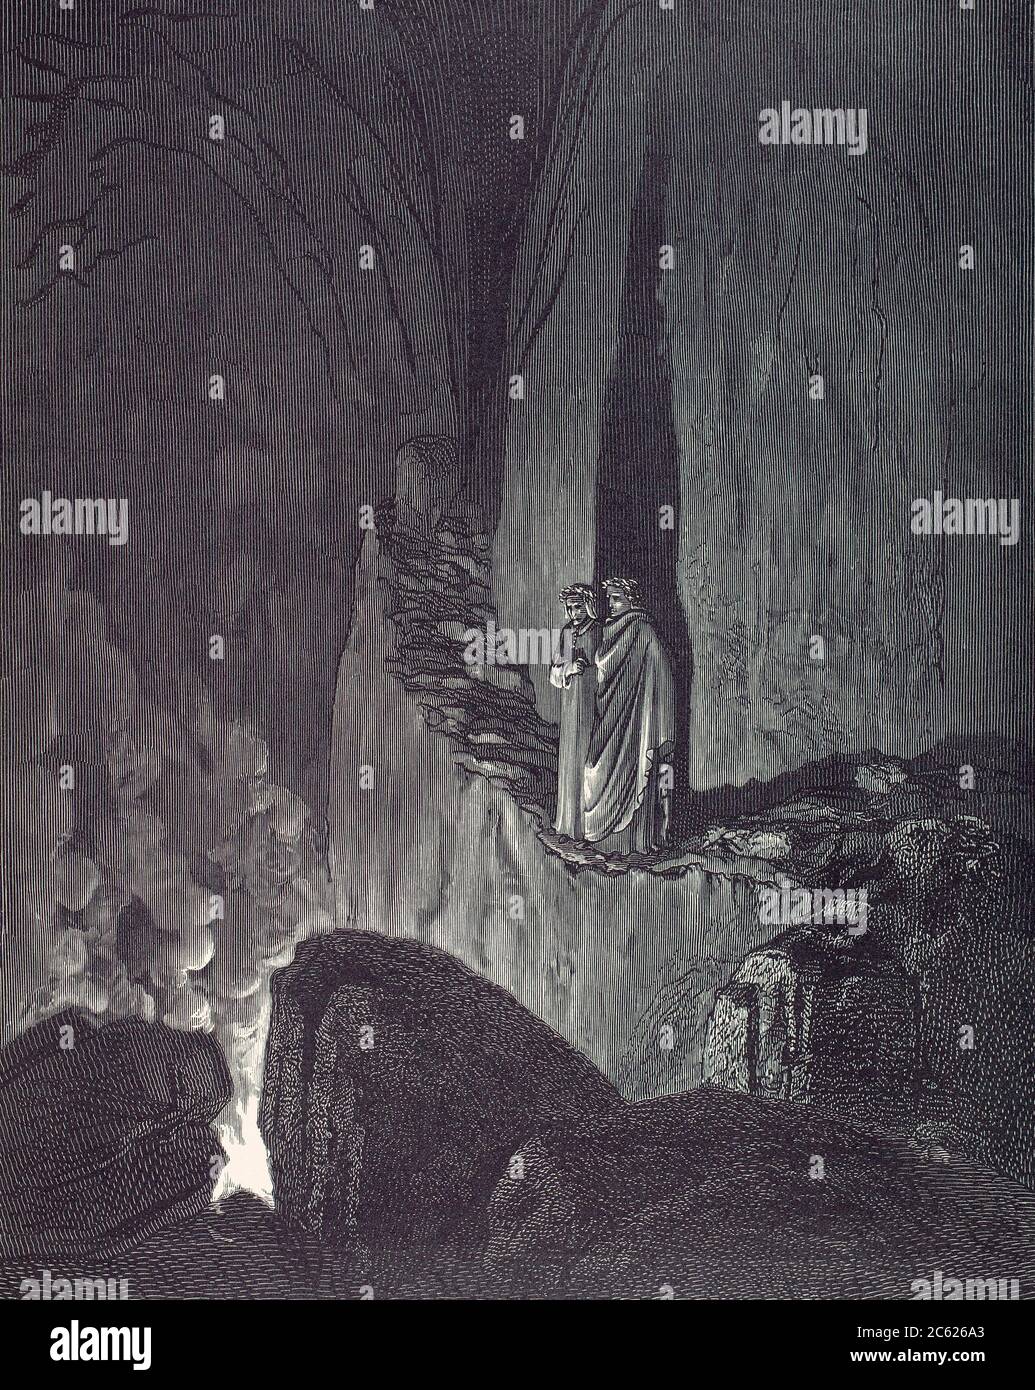 Die Vision der Hölle. Illustration von Gustave Dore für Dante Alighieris Inferno, den ersten Teil der epischen Erzählpoem-Trilogie die Göttliche Komödie. Stockfoto